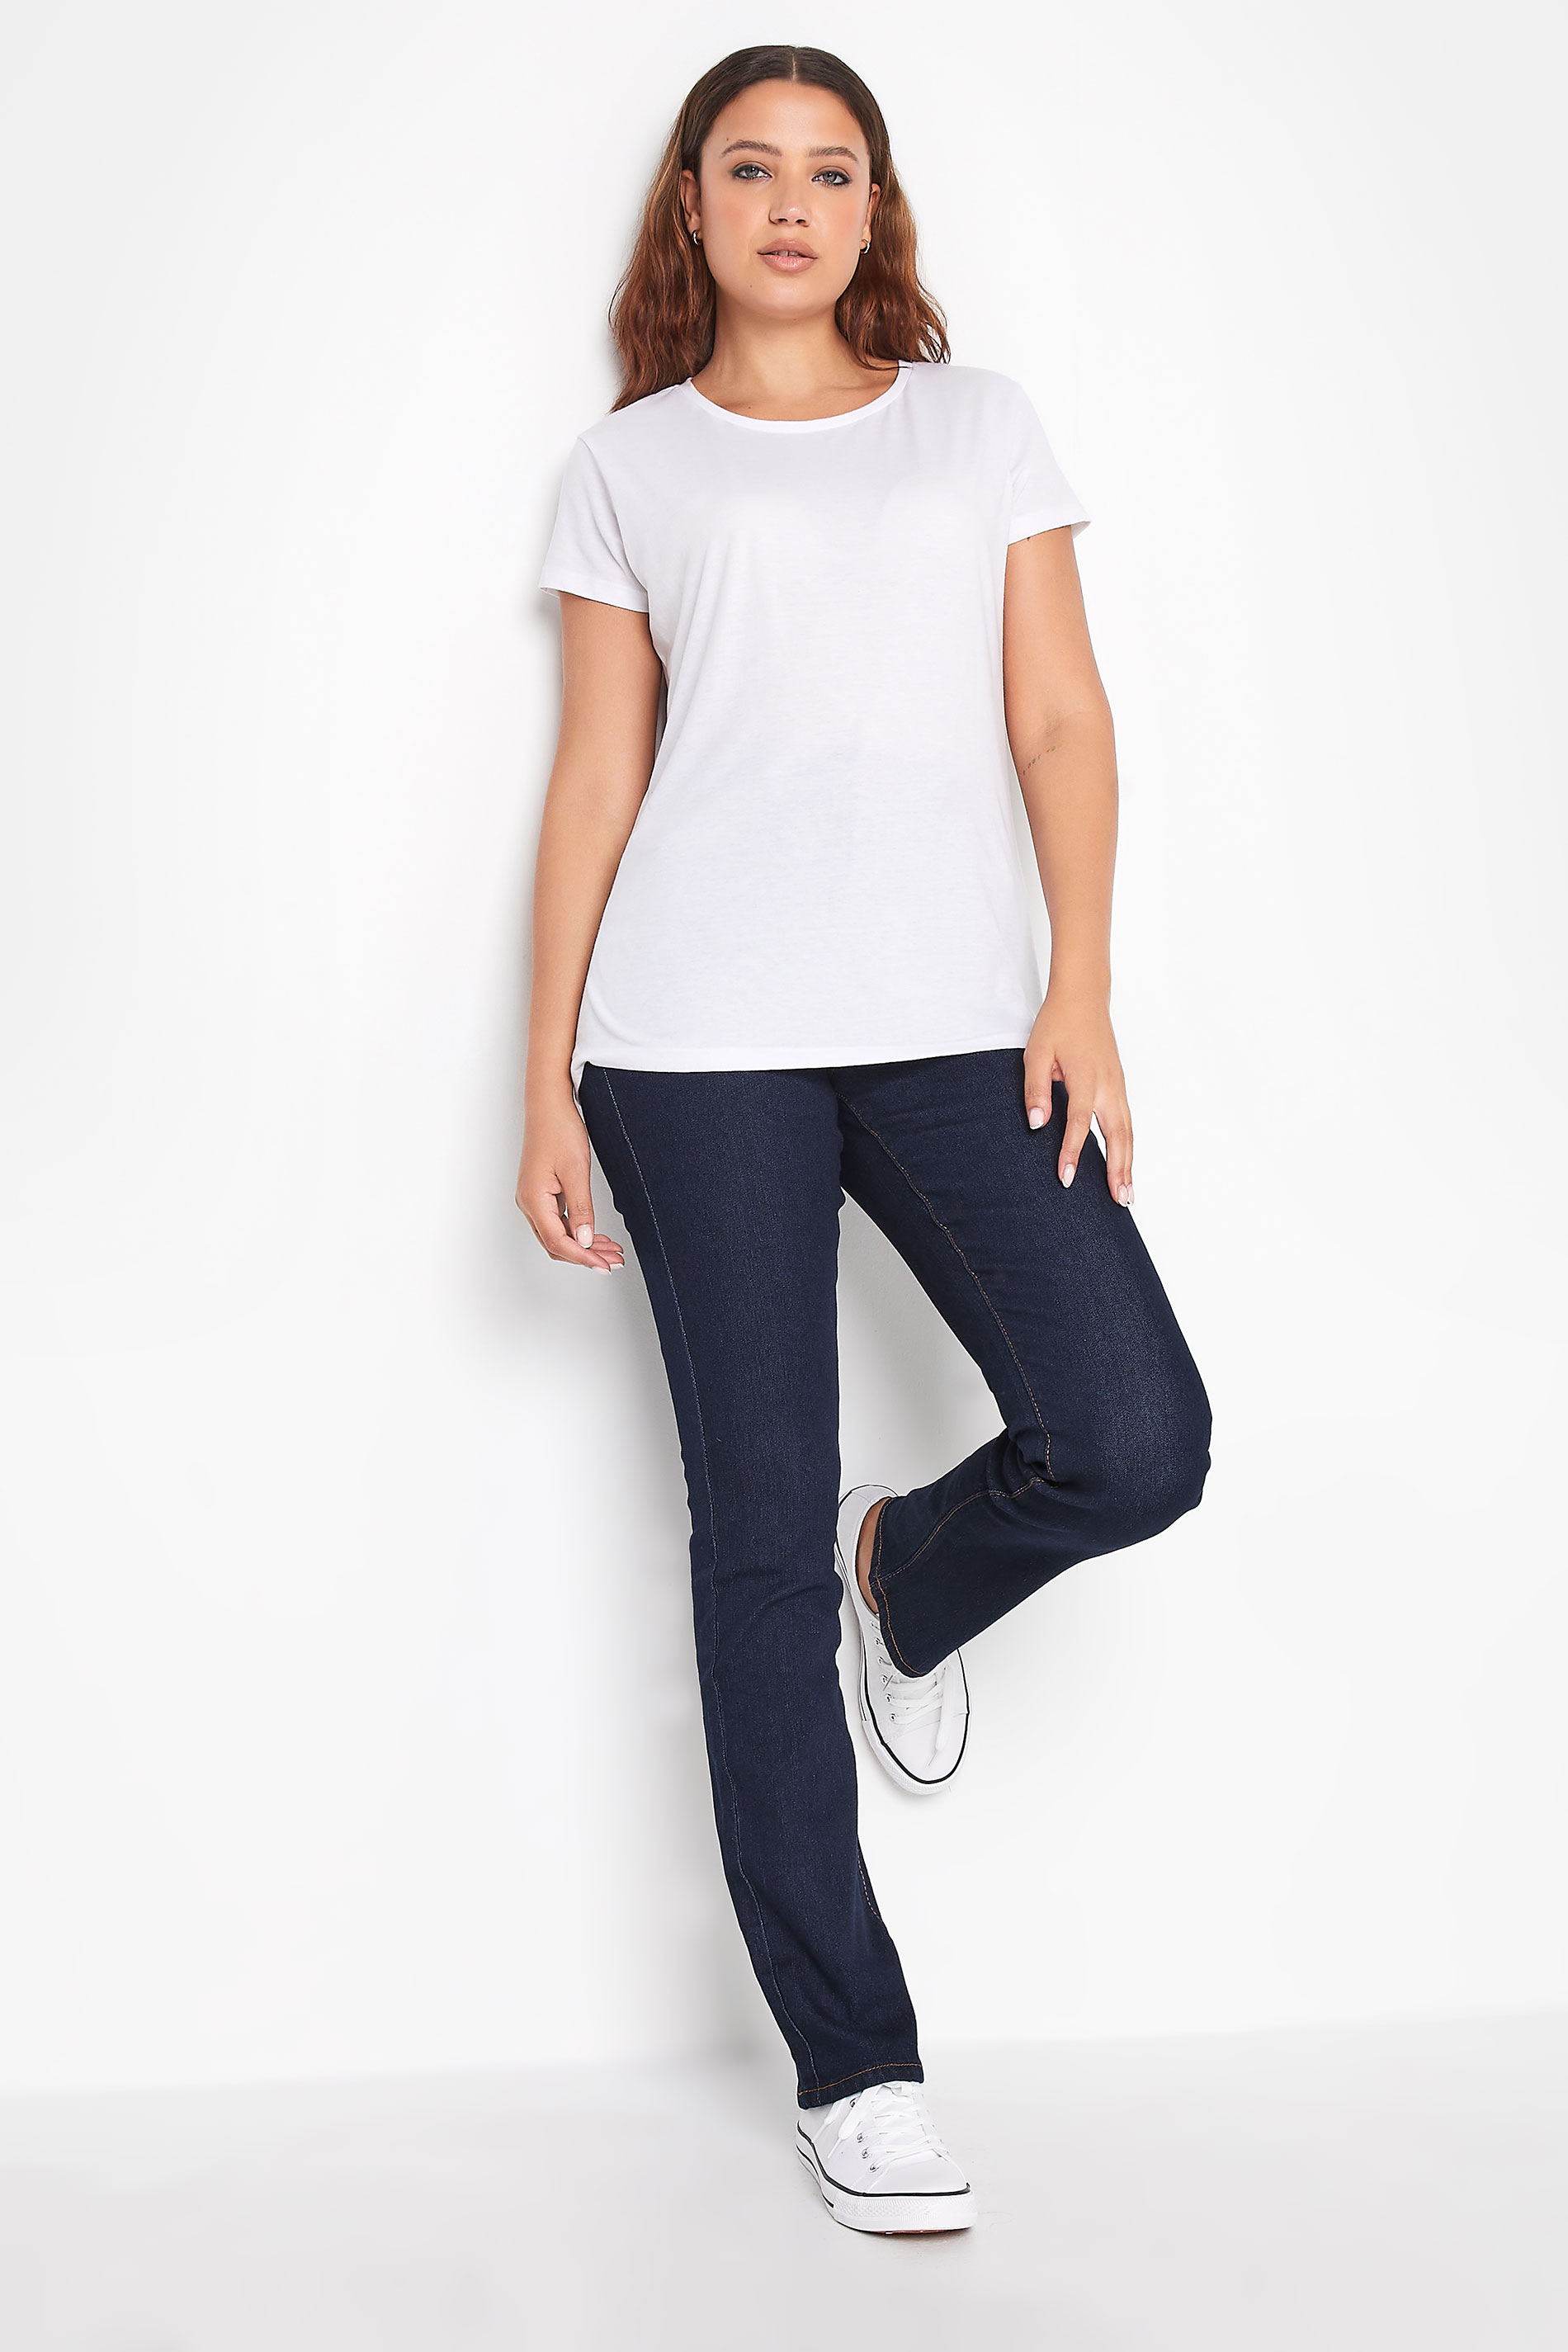 LTS Tall Women's Blue Straight Leg Jeans | Long Tall Sally  3